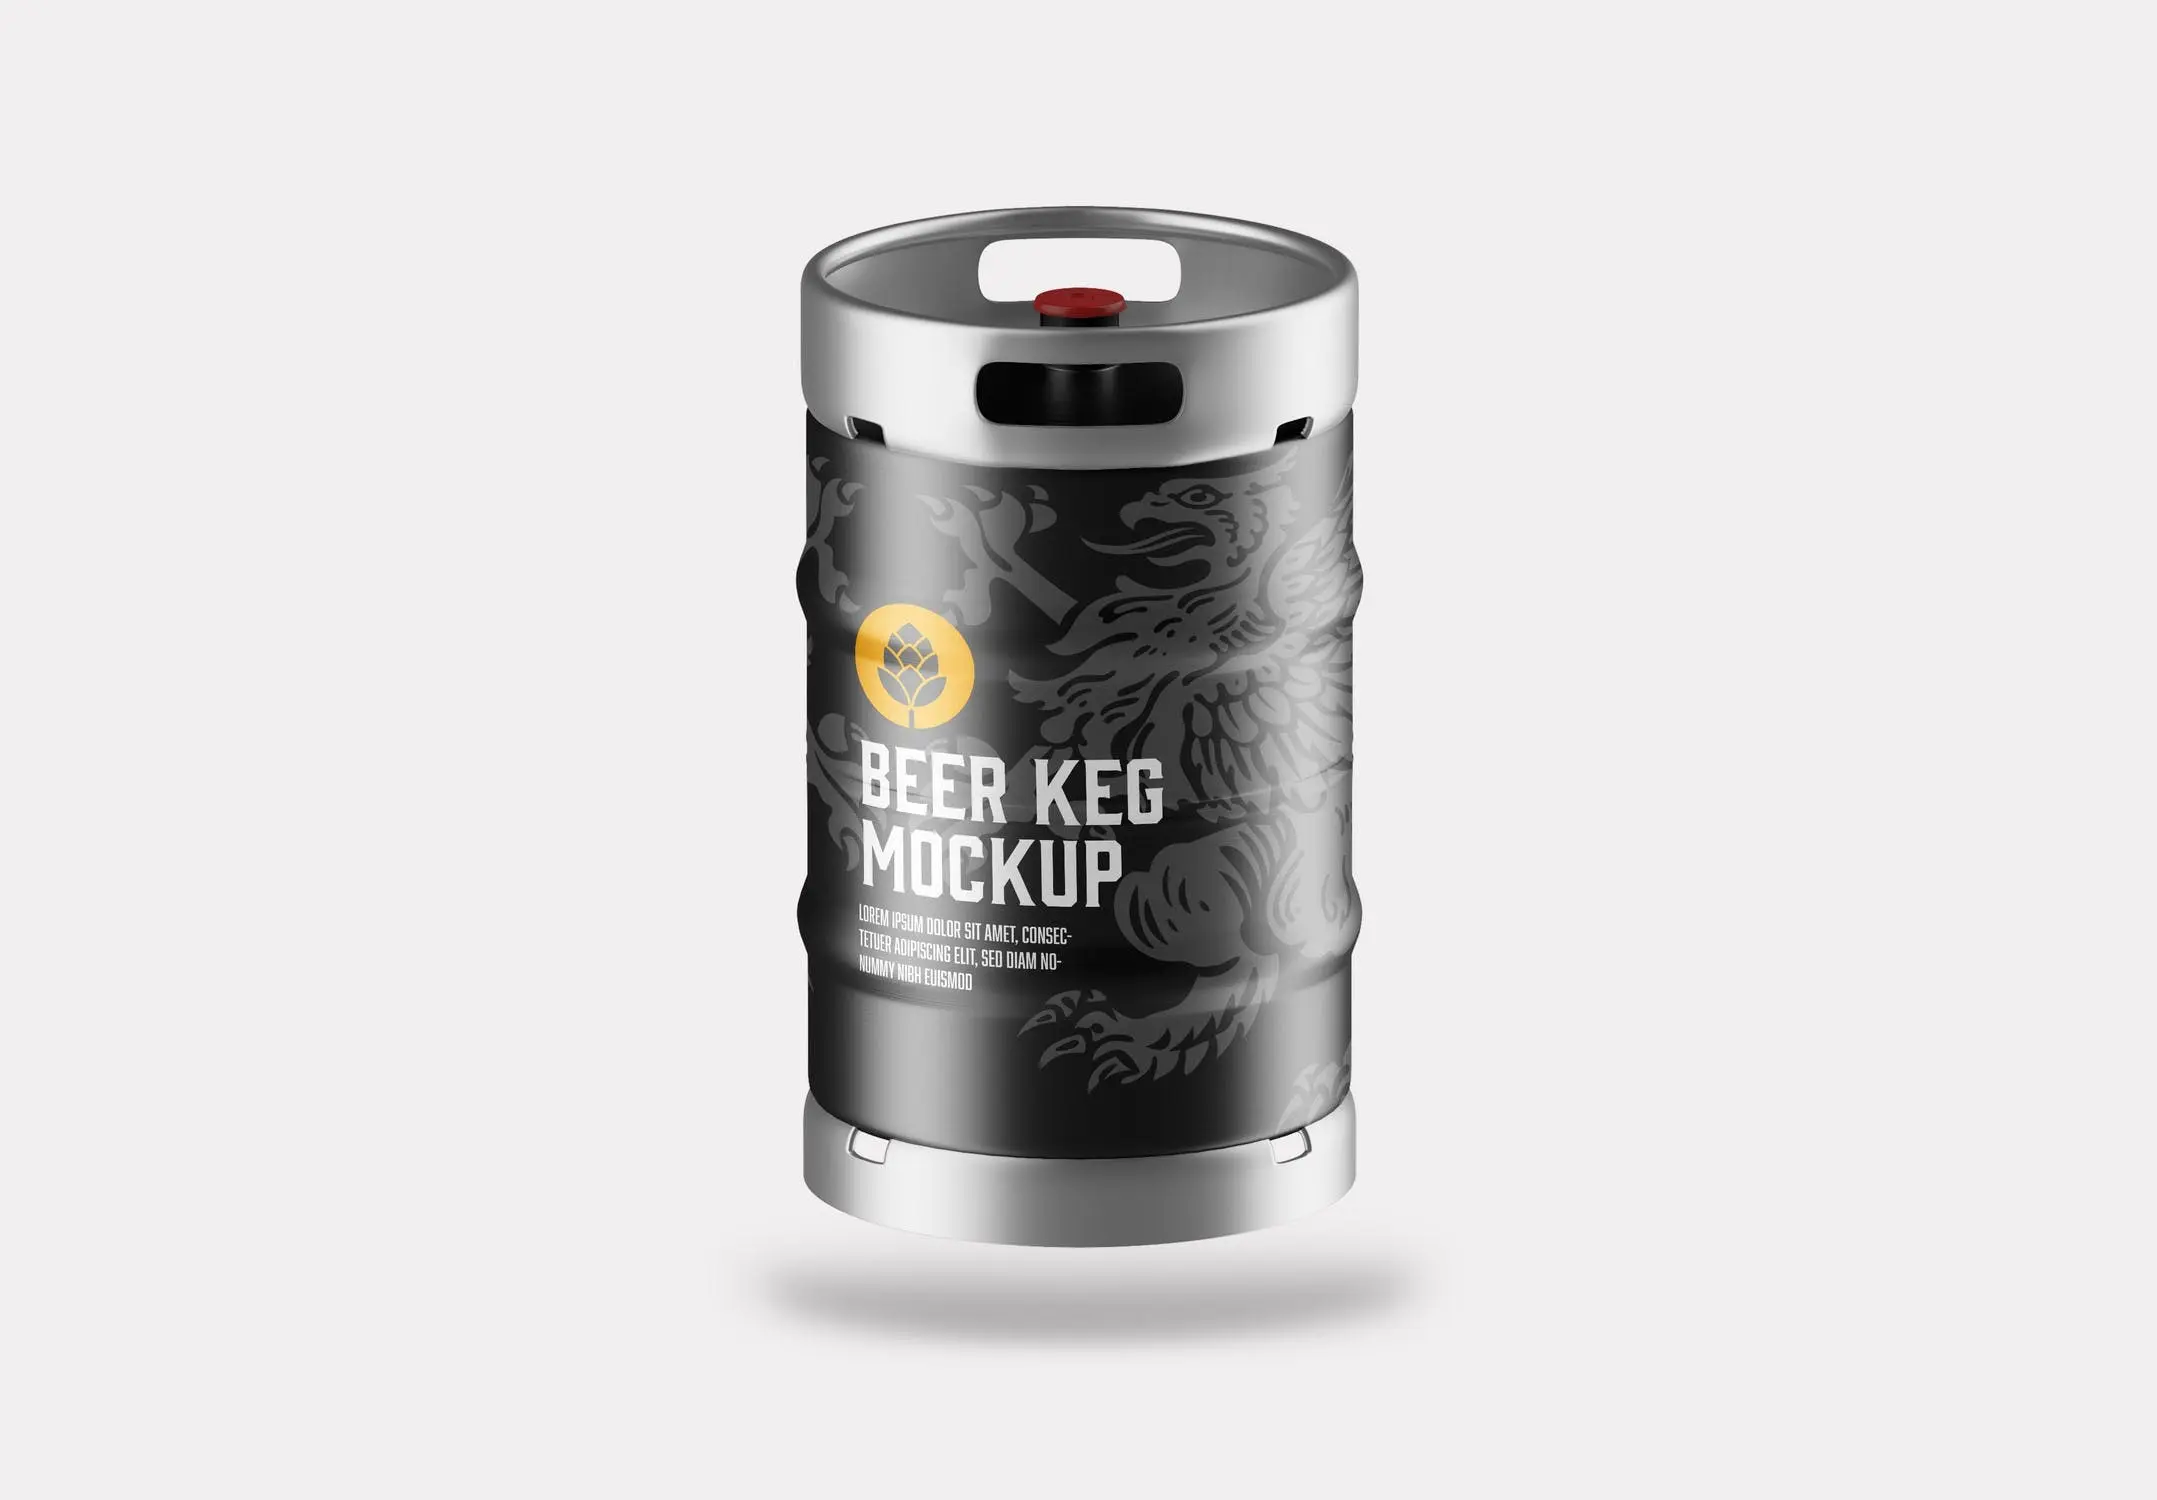 46 金属啤酒桶包装设计样机 Beer Keg Mockup